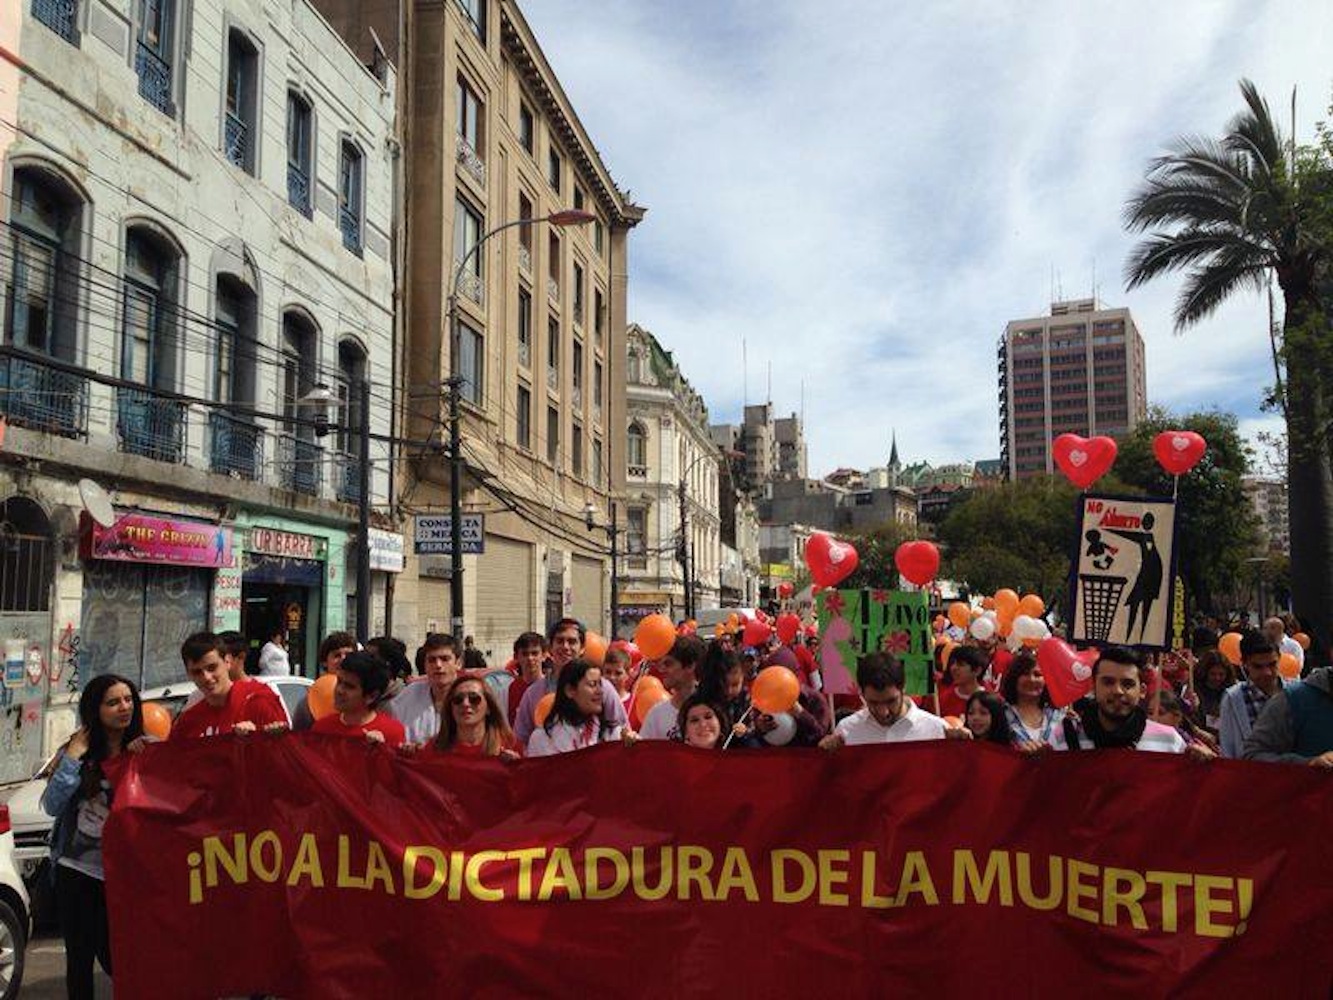 Pro-life demonstration at Valparaíso